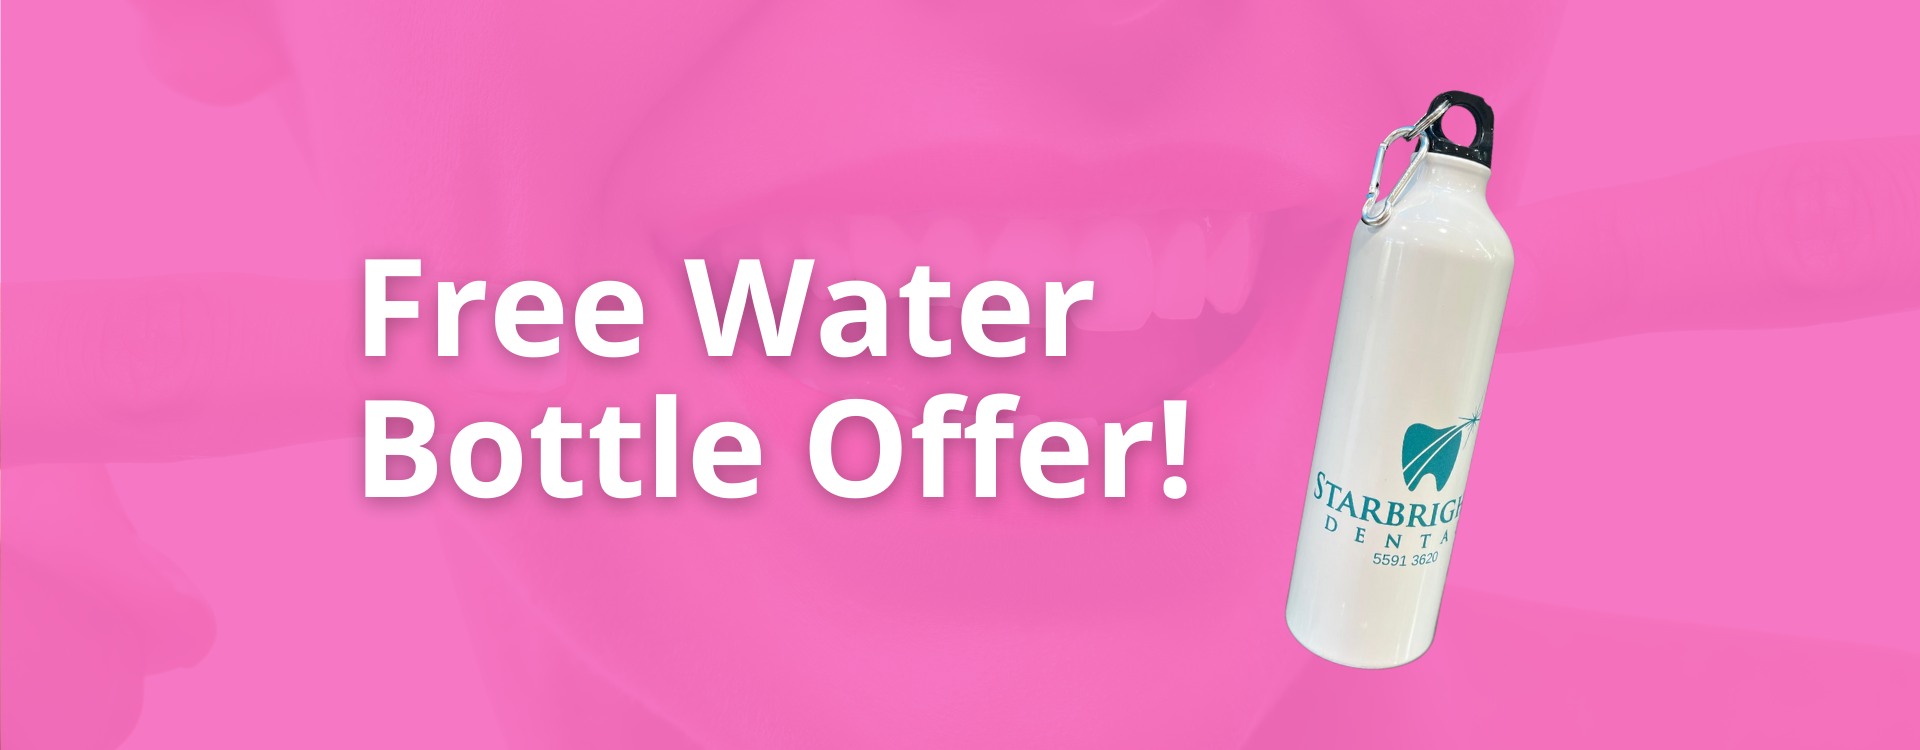 free water bottle offer